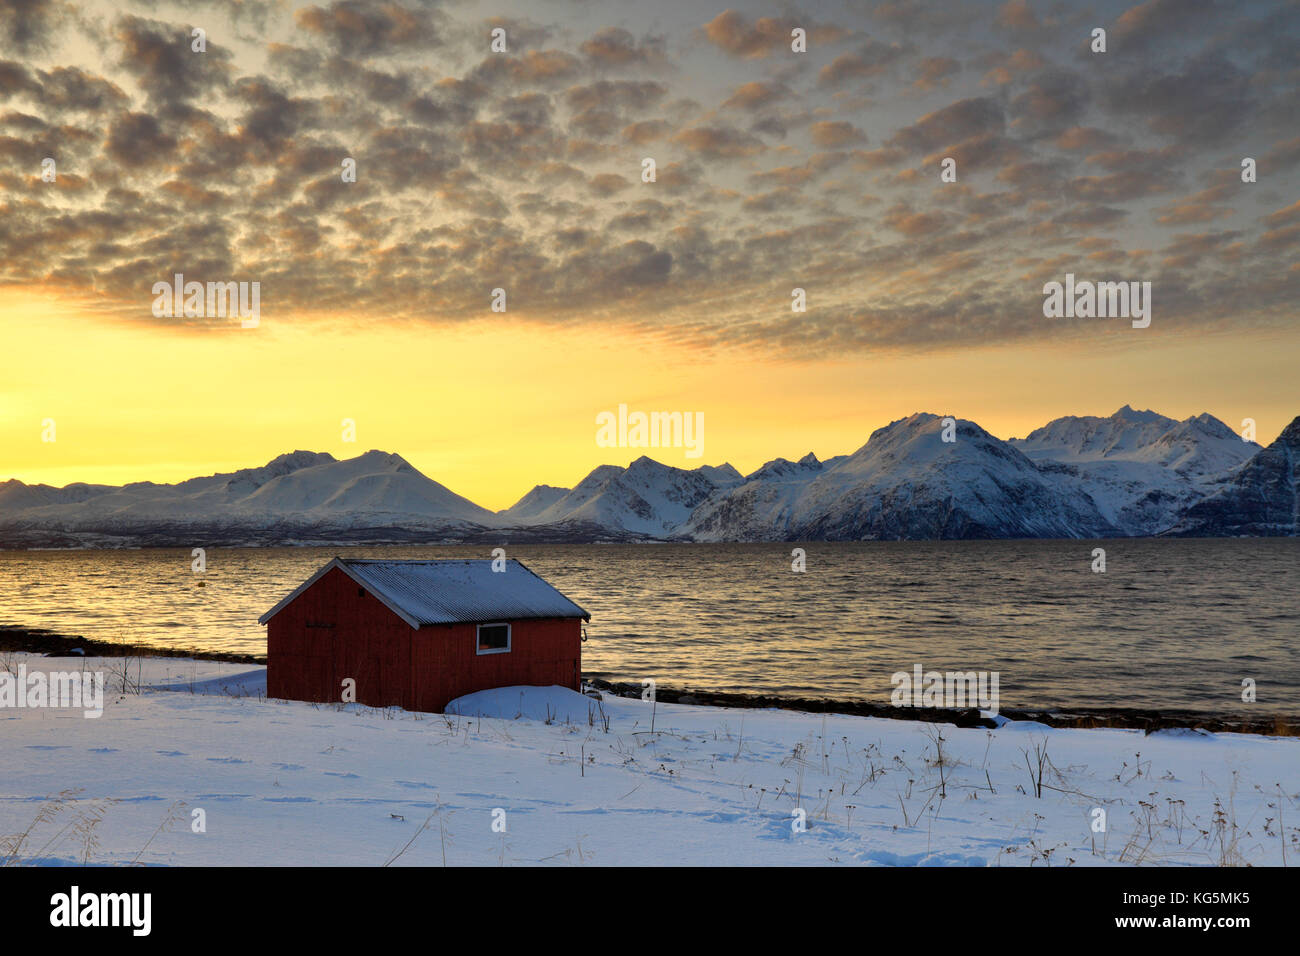 Ciel Orange au coucher du soleil sur les huttes de bois appelé Rorbu encadrée par la mer gelée et des sommets enneigés des Alpes de Lyngen Djupvik Tromsø Norvège Europe Banque D'Images